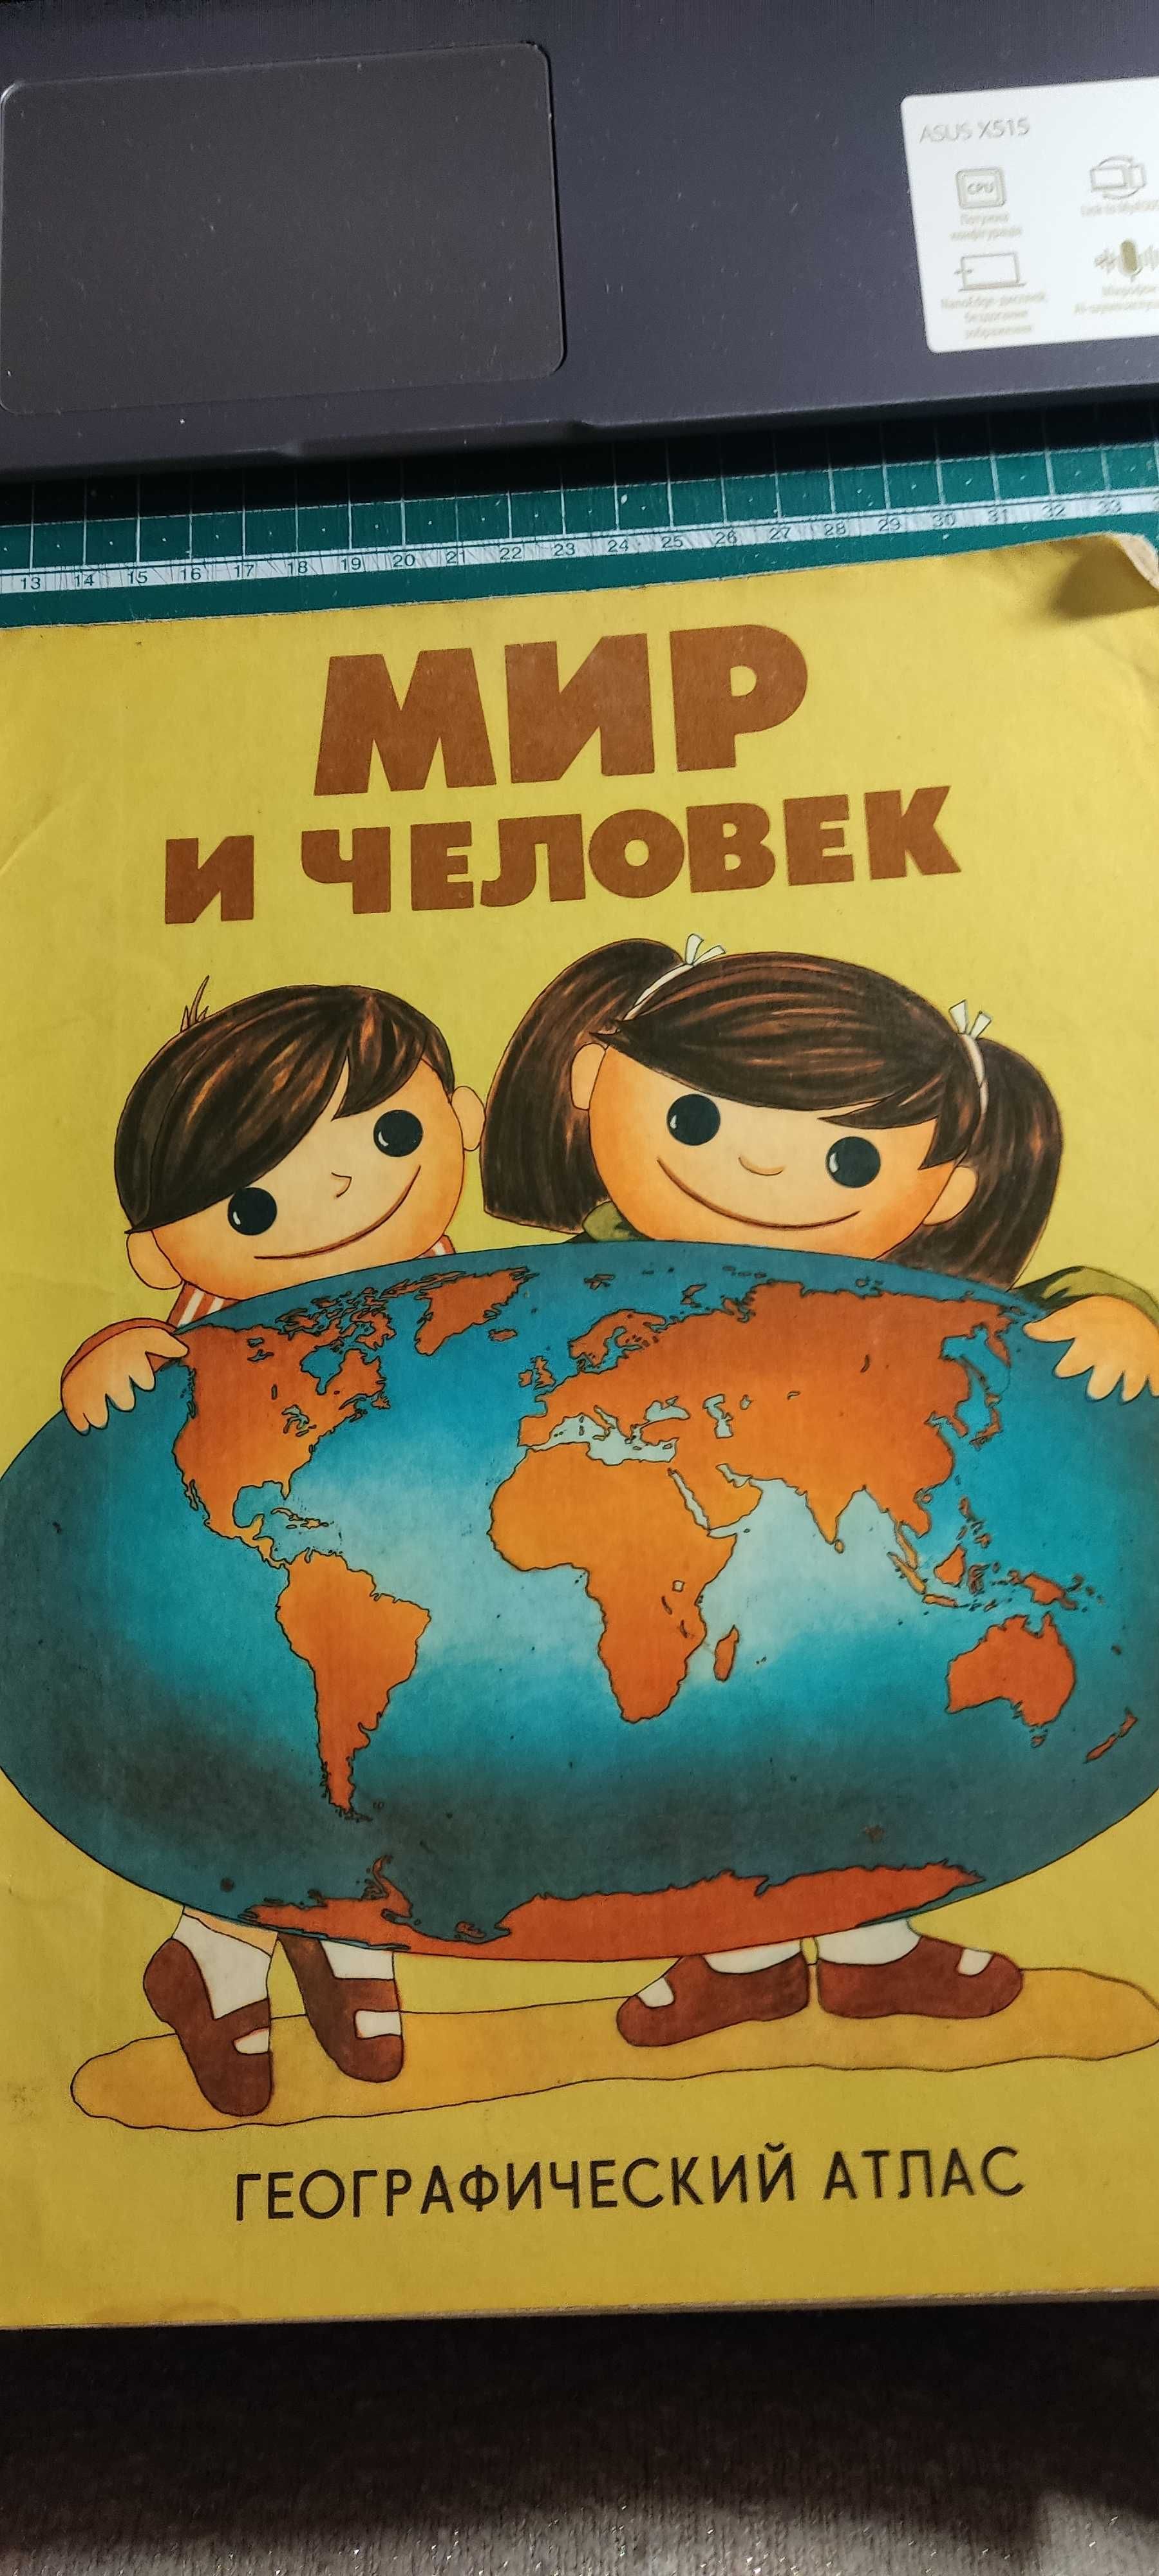 Географический атлас Мир и человек 1986 г. Винтаж. История.